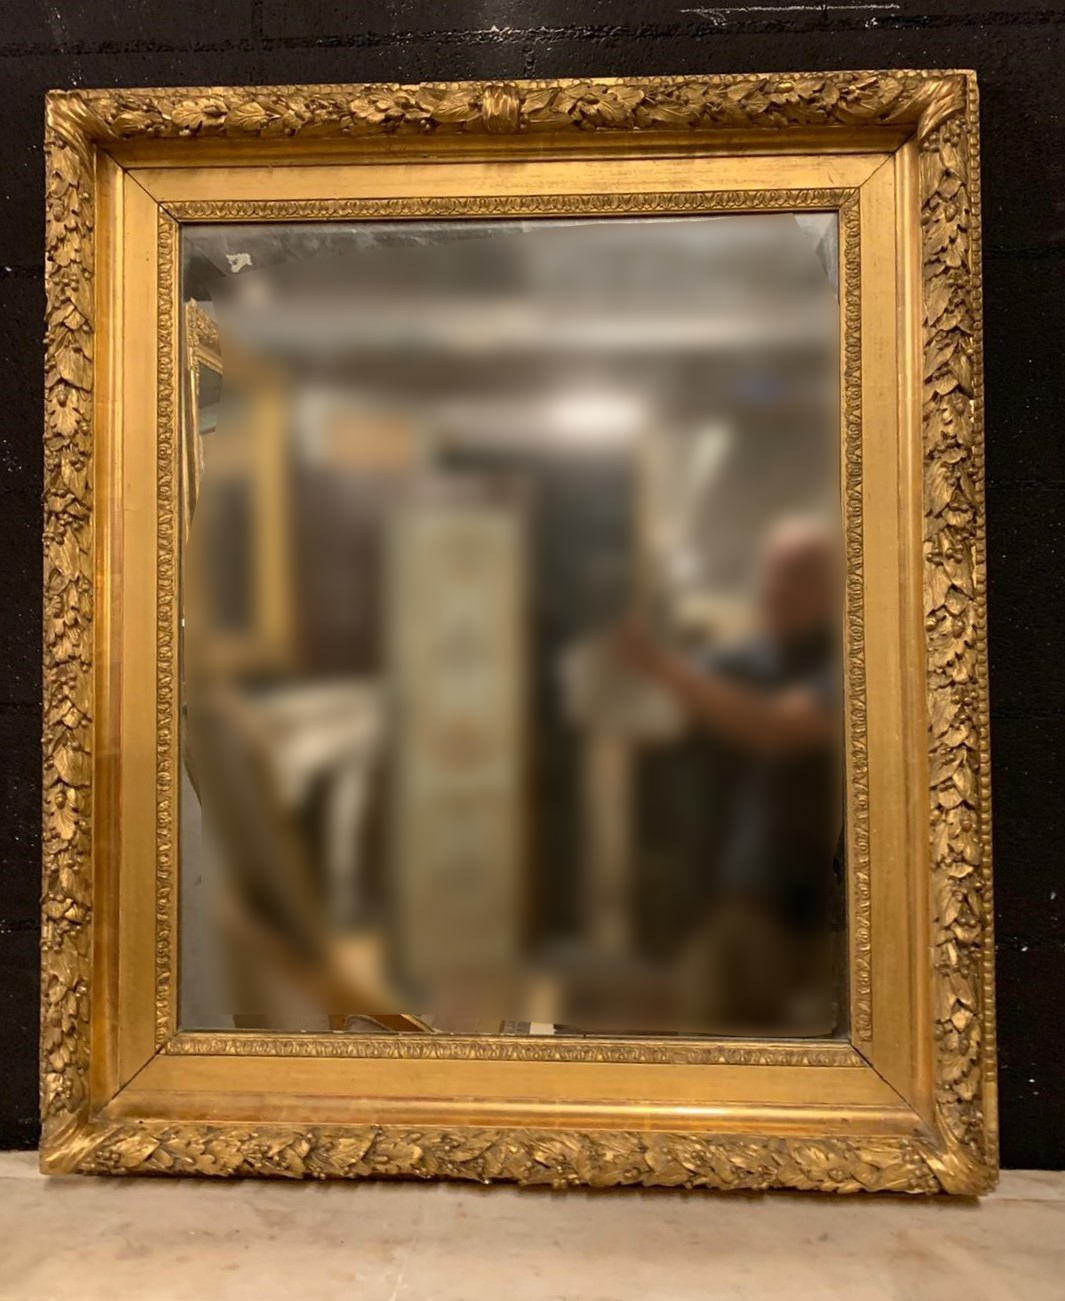 specc340 - specchiera dorata con cornice scolpita, cm l 82 x h 95 x p. 8